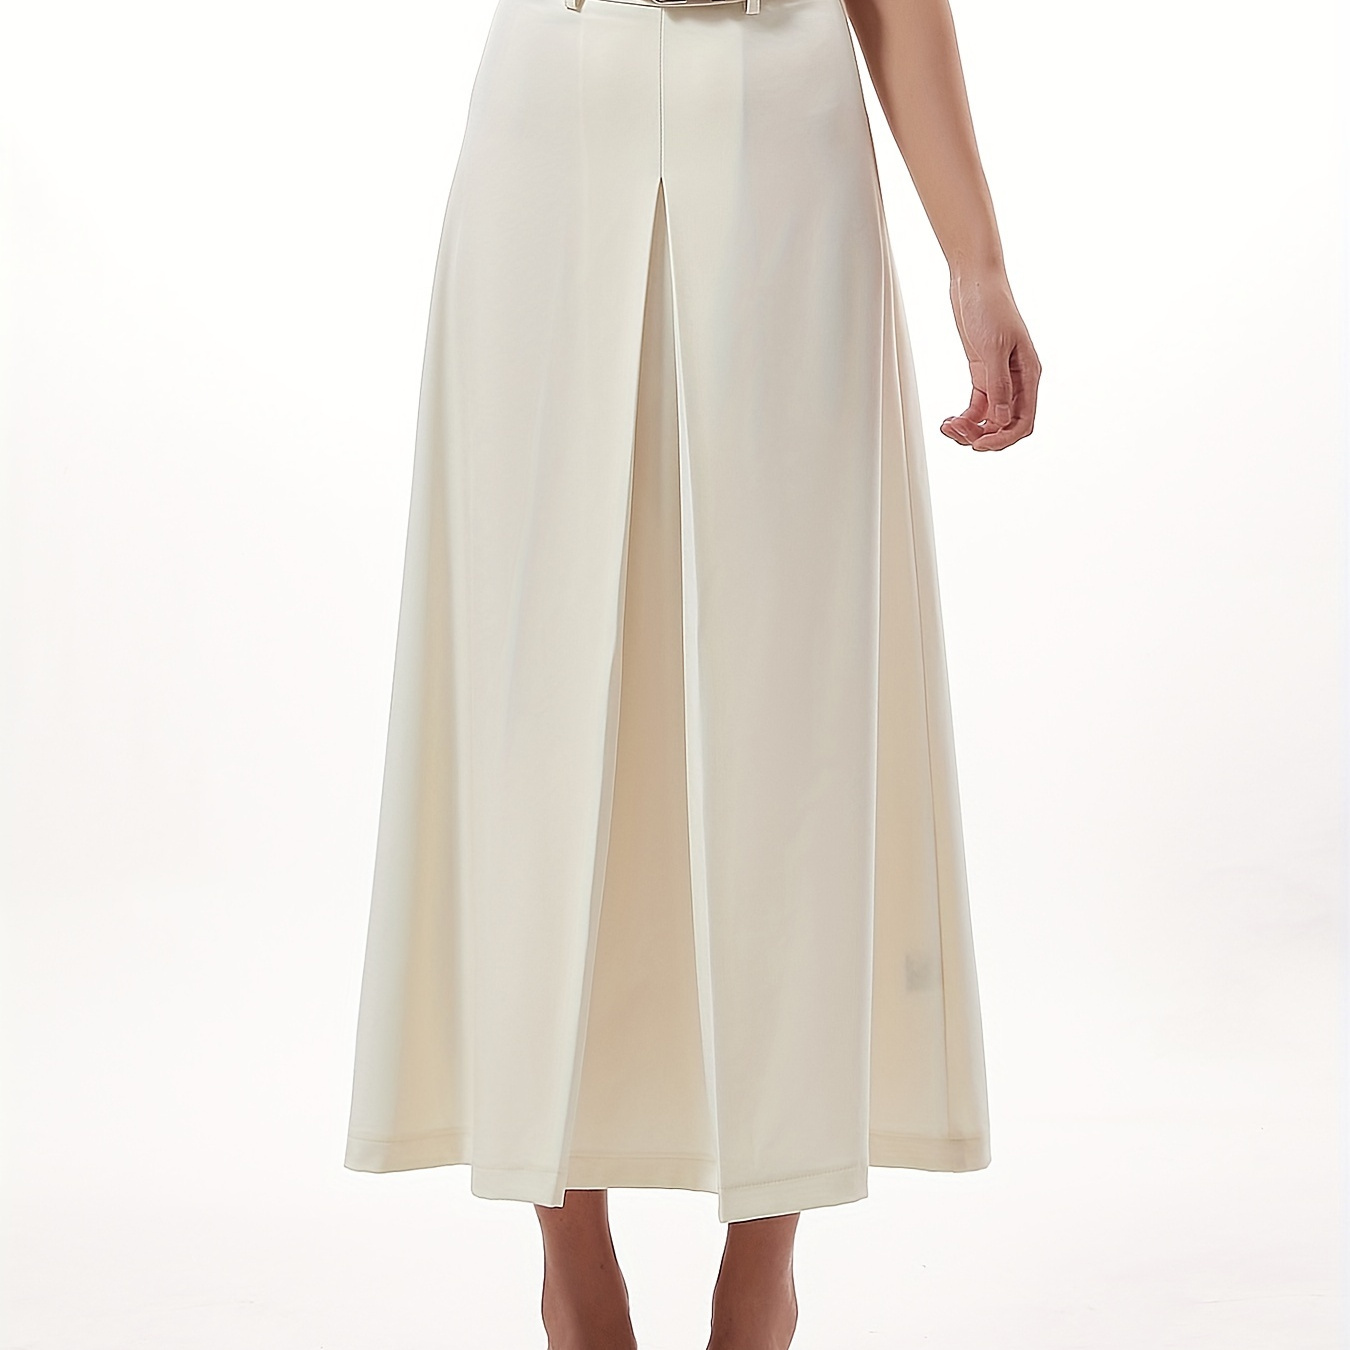 

High Waist Pleated Skirt, Elegant Solid A-line Midi Skirt For Spring & Summer, Women's Clothing